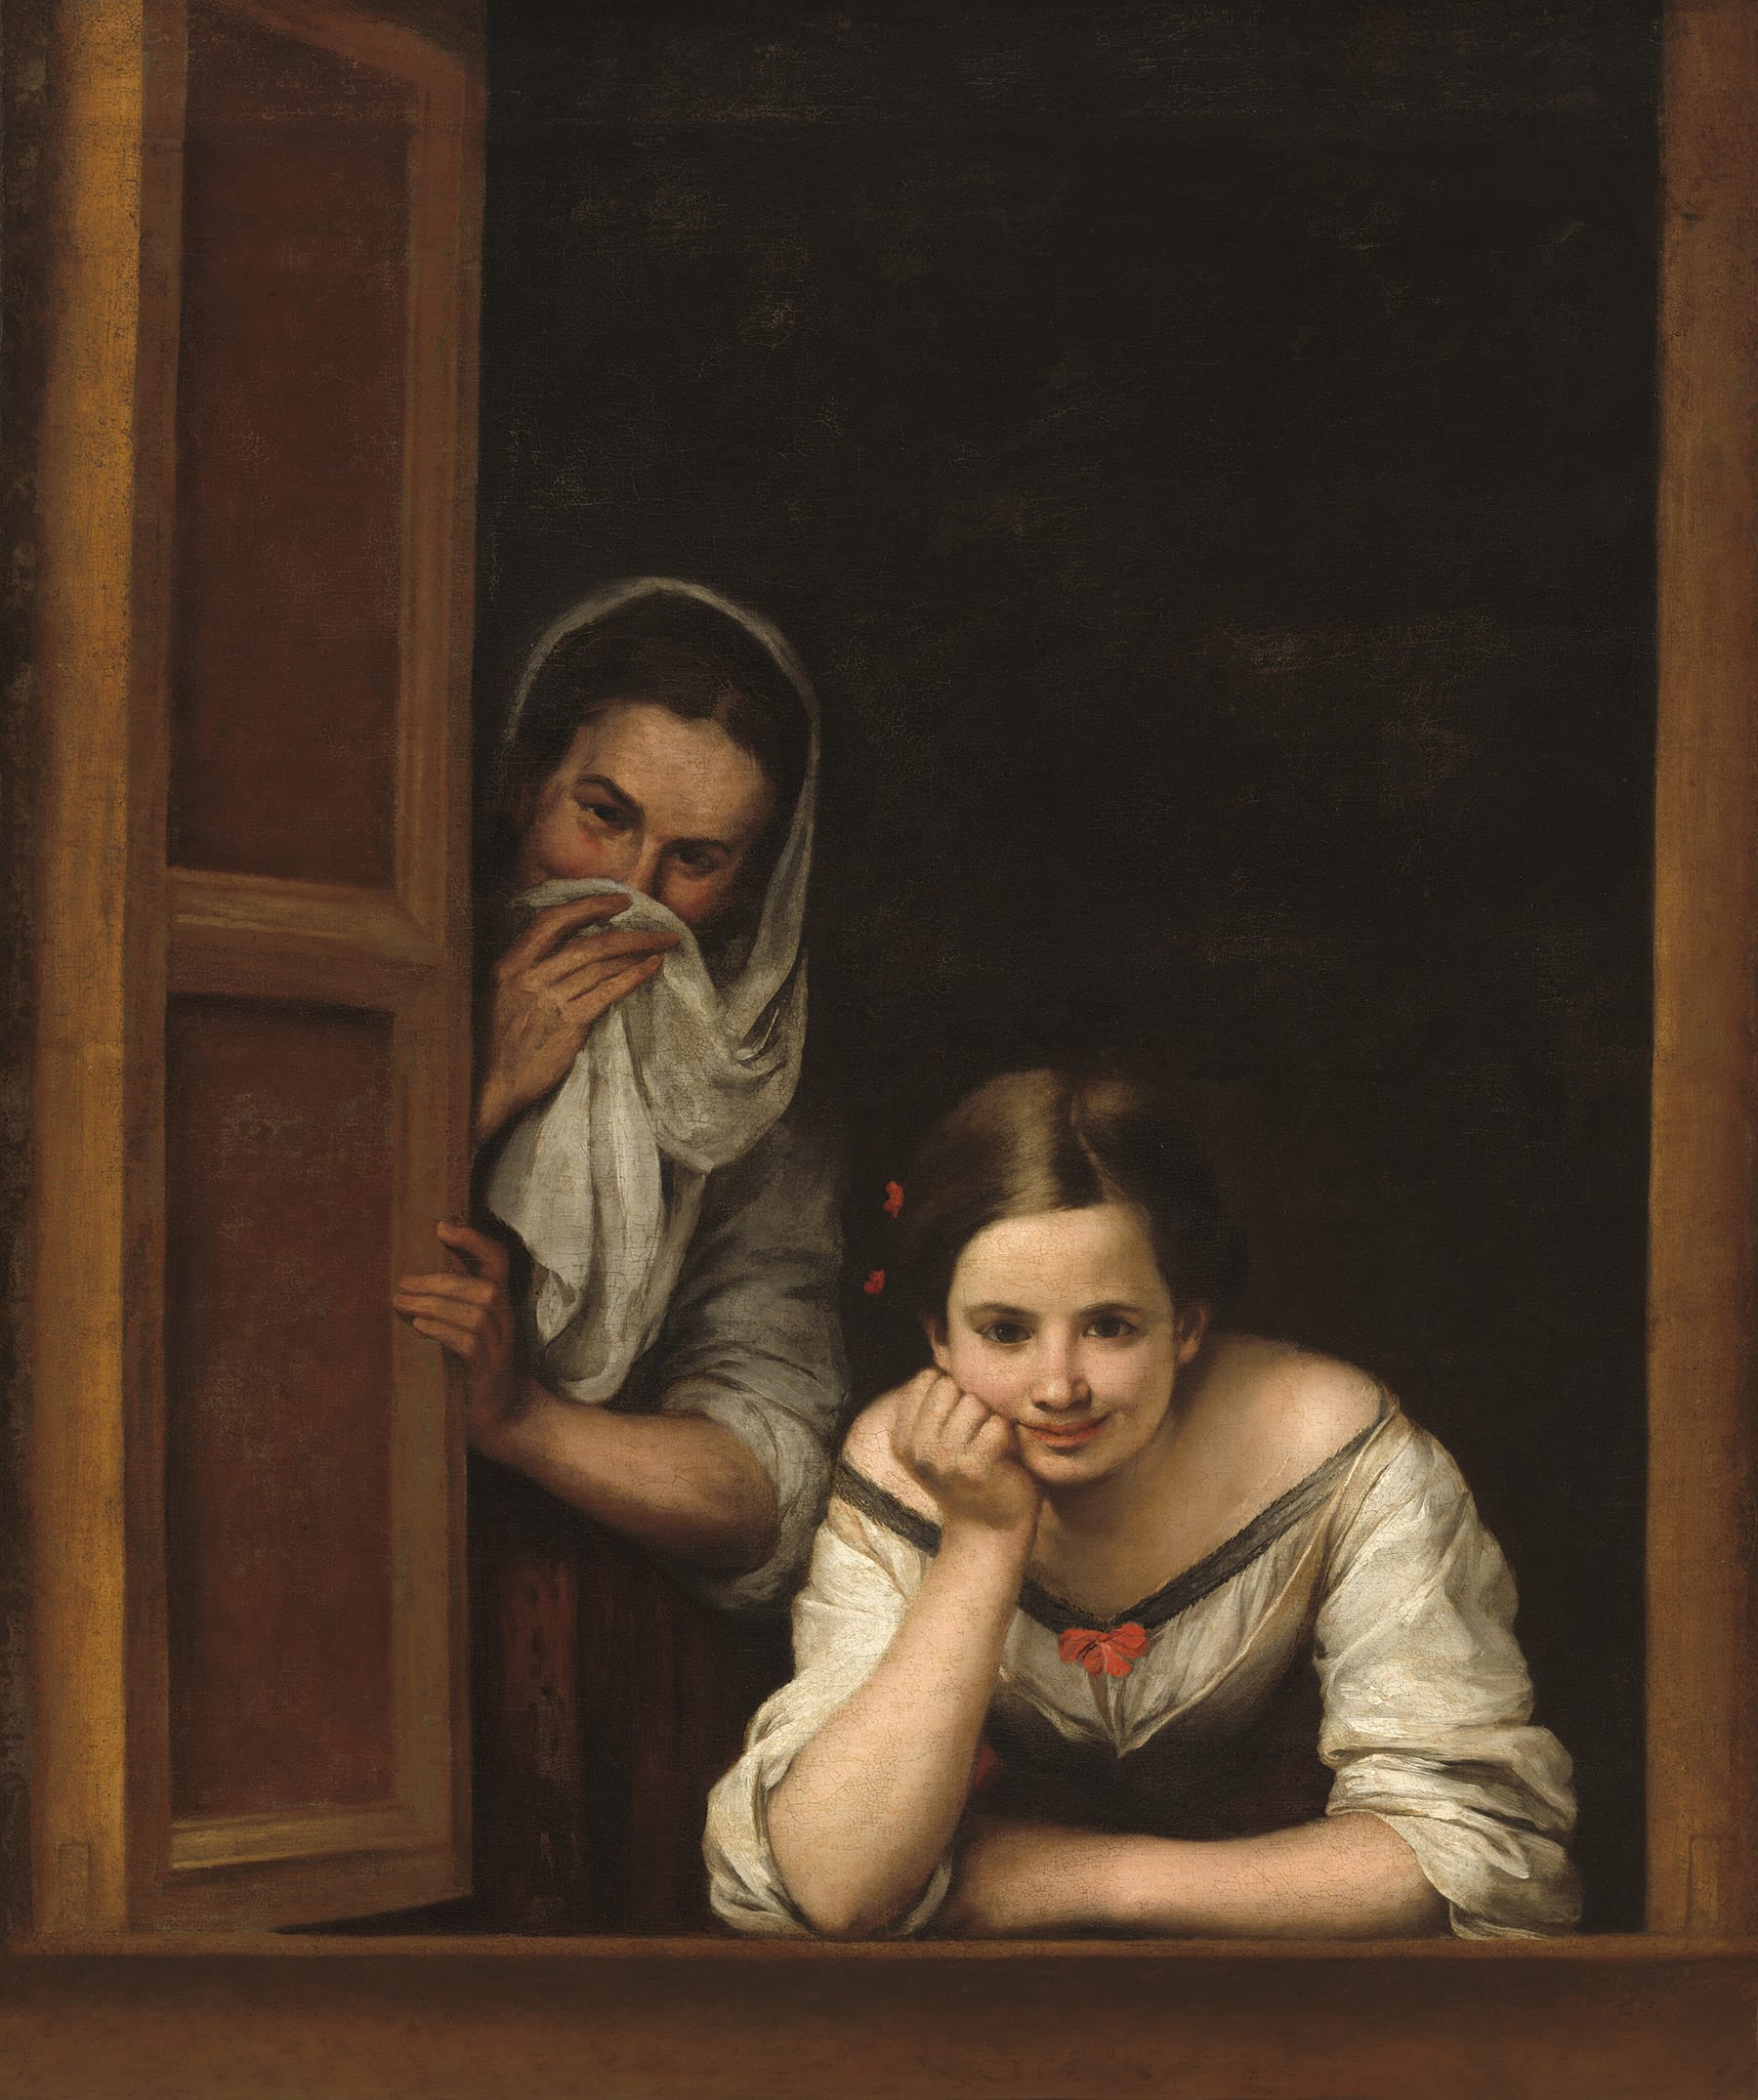 Bartolomé Esteban Murillo: Two Women at a Window, c. 1655/1660